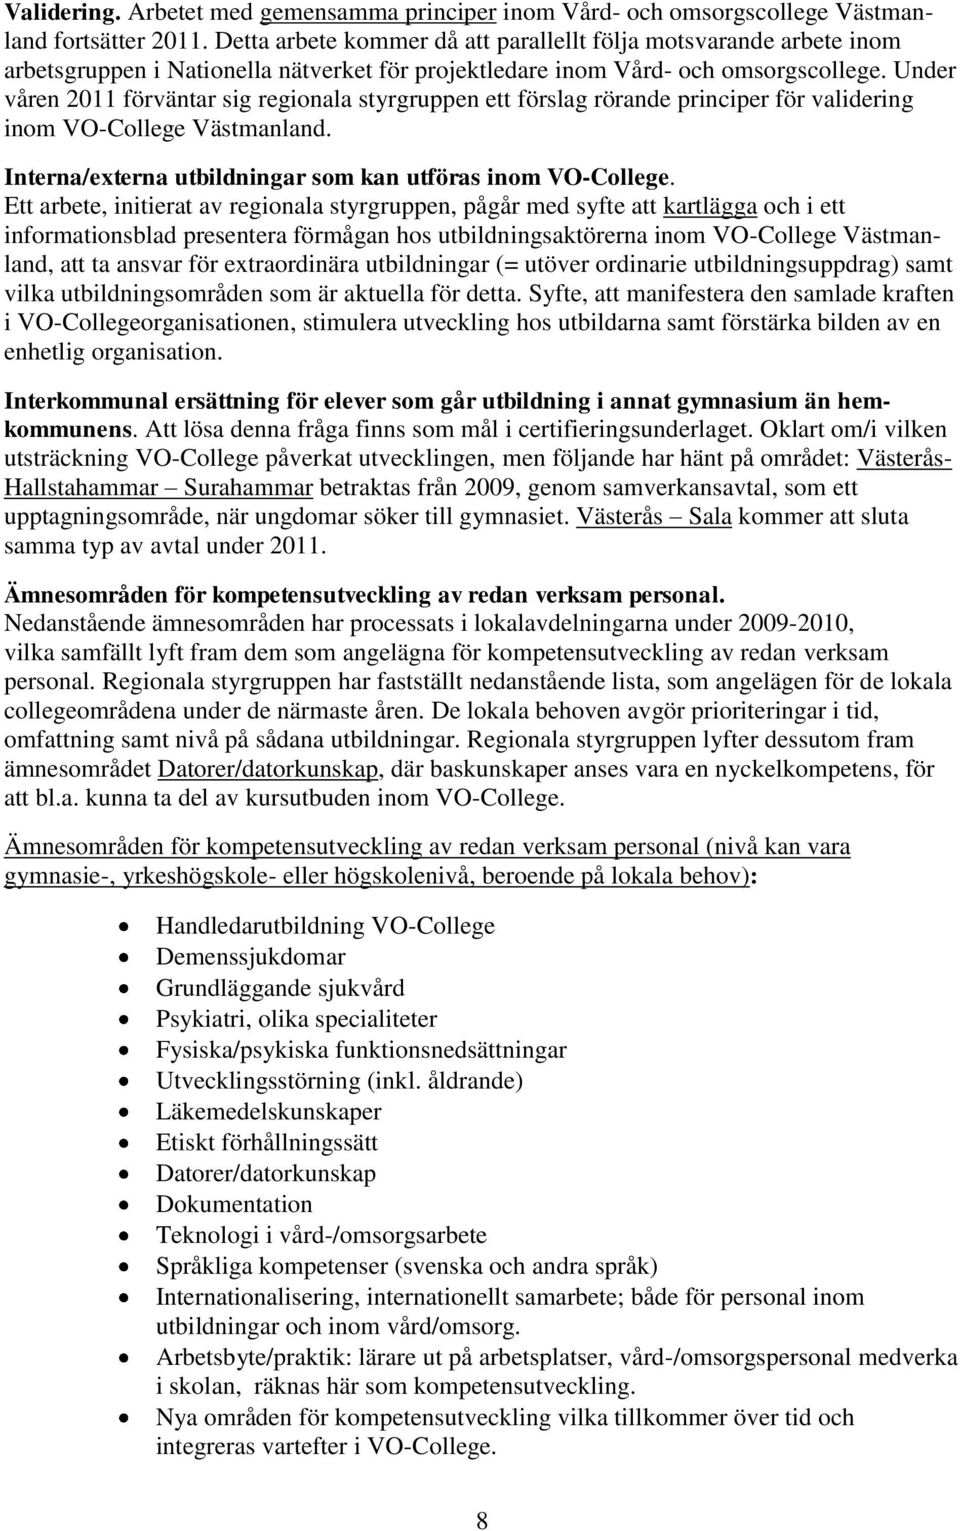 Under våren 2011 förväntar sig regionala styrgruppen ett förslag rörande principer för validering inom VO-College Västmanland. Interna/externa utbildningar som kan utföras inom VO-College.